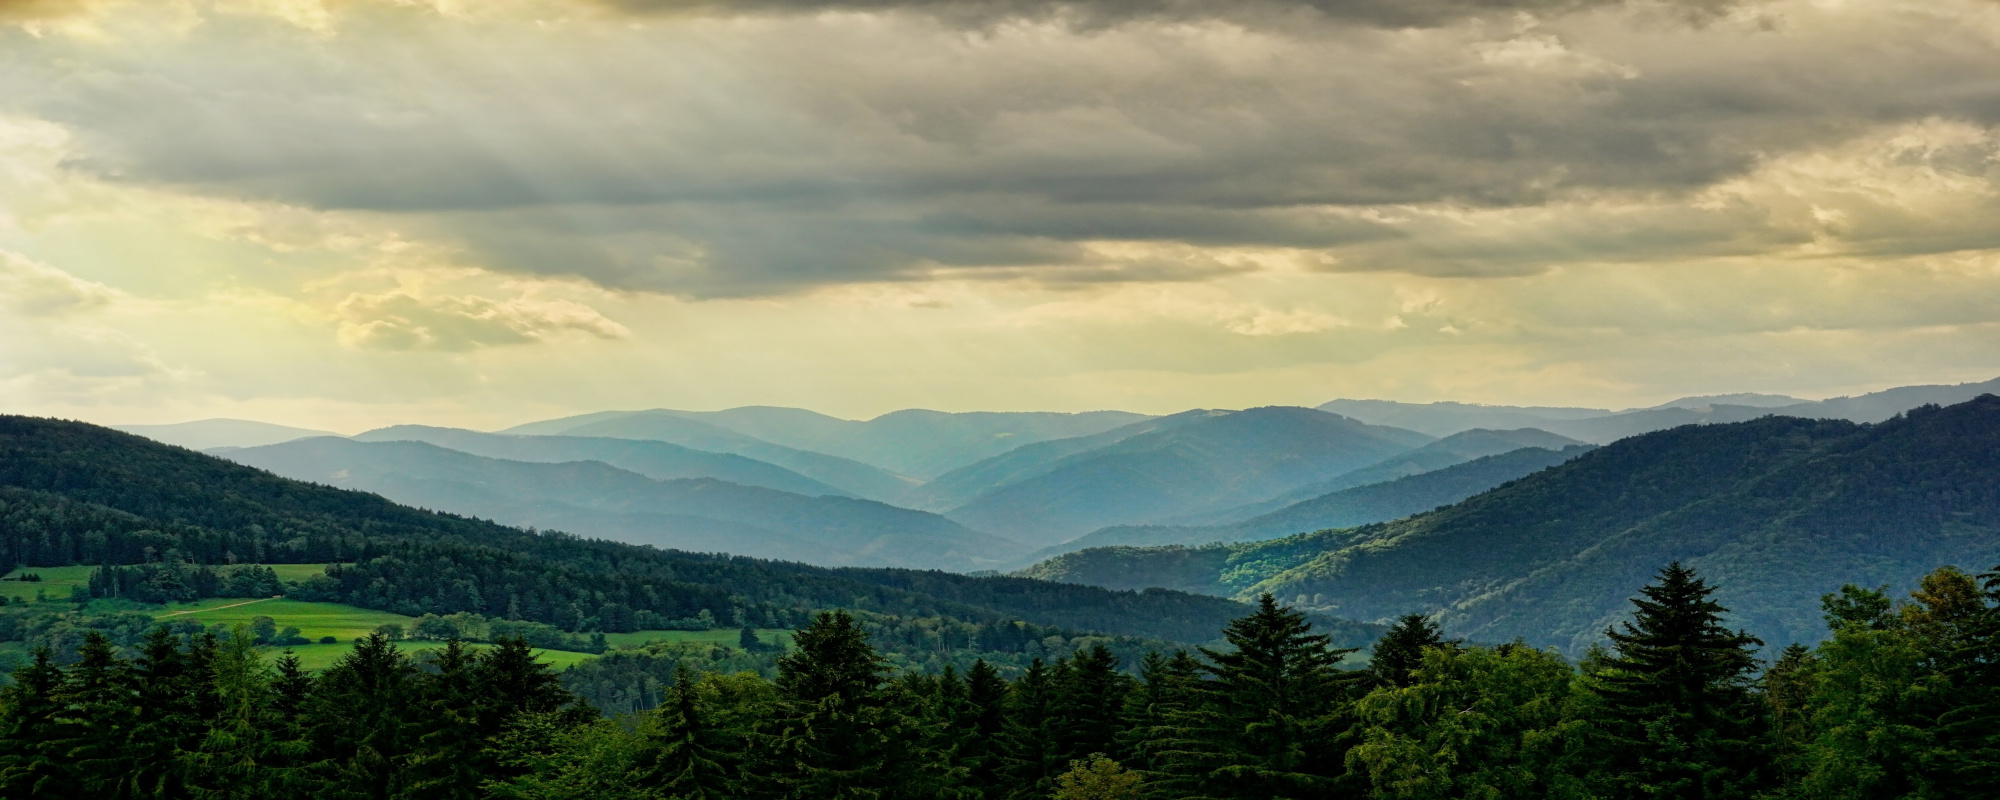 Panoramablick auf grüne Landschaft mit Hügeln und Tälern bei bewölktem Himmel